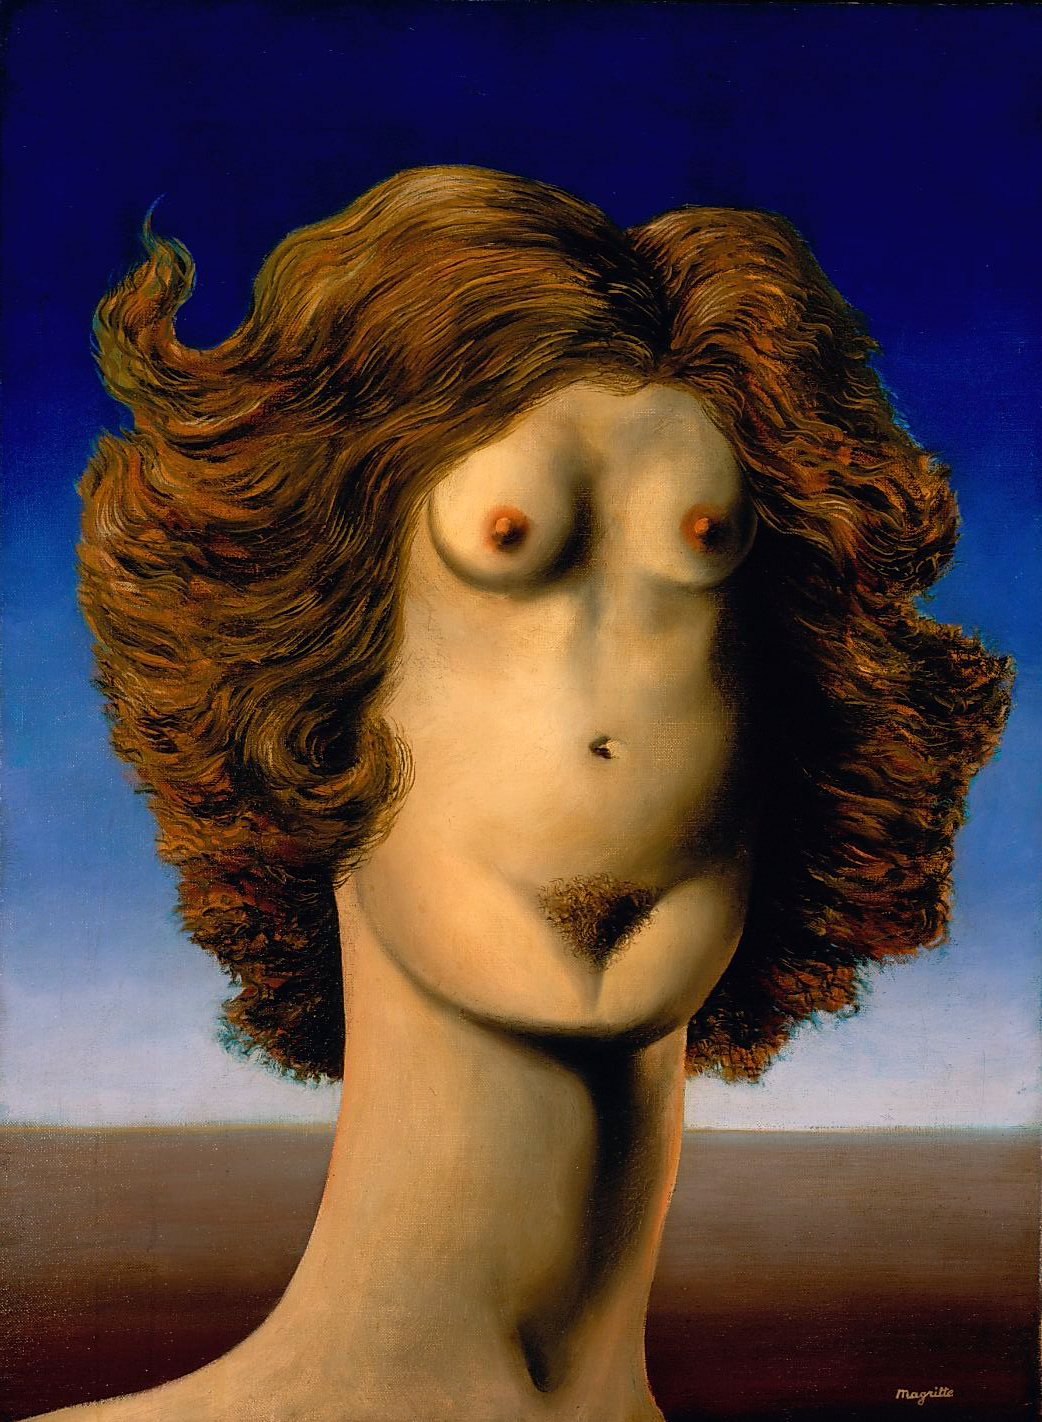 The Rape, René Magritte